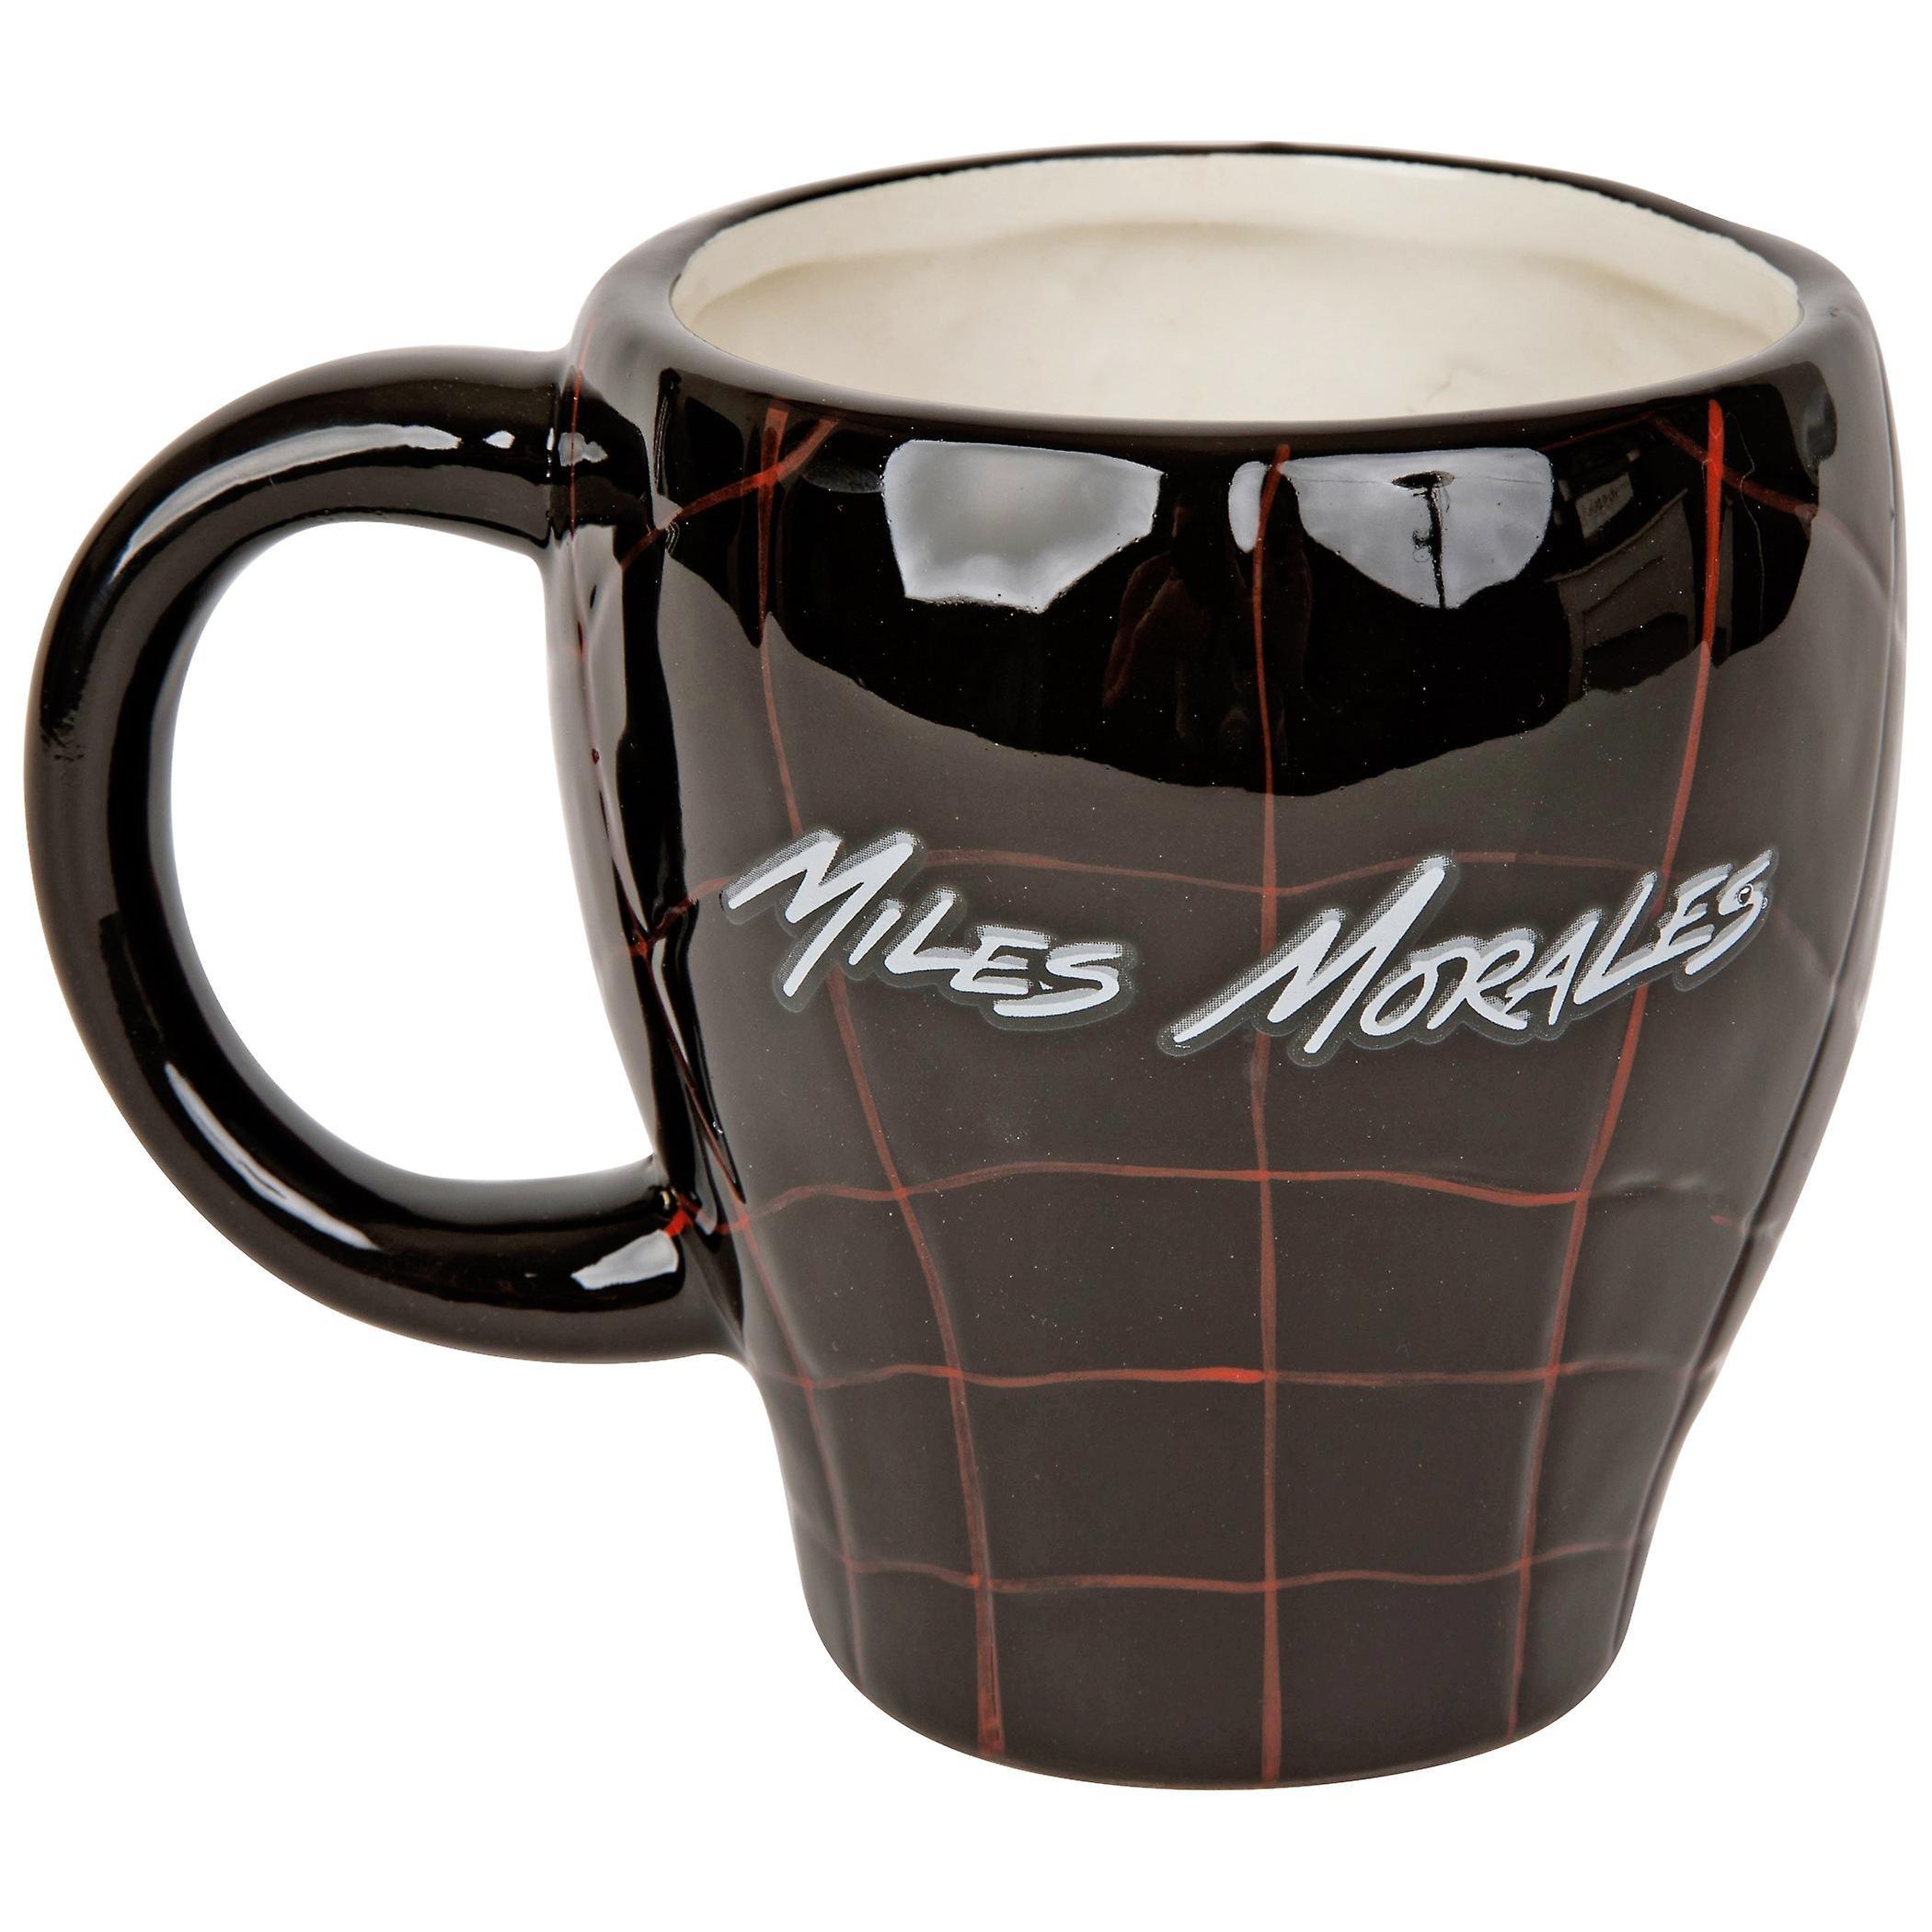 https://media.gamestop.com/i/gamestop/20002395_ALT02/Spider-Man-Miles-Morales-Ceramic-3D-Sculpted-20-oz-Mug?$pdp$